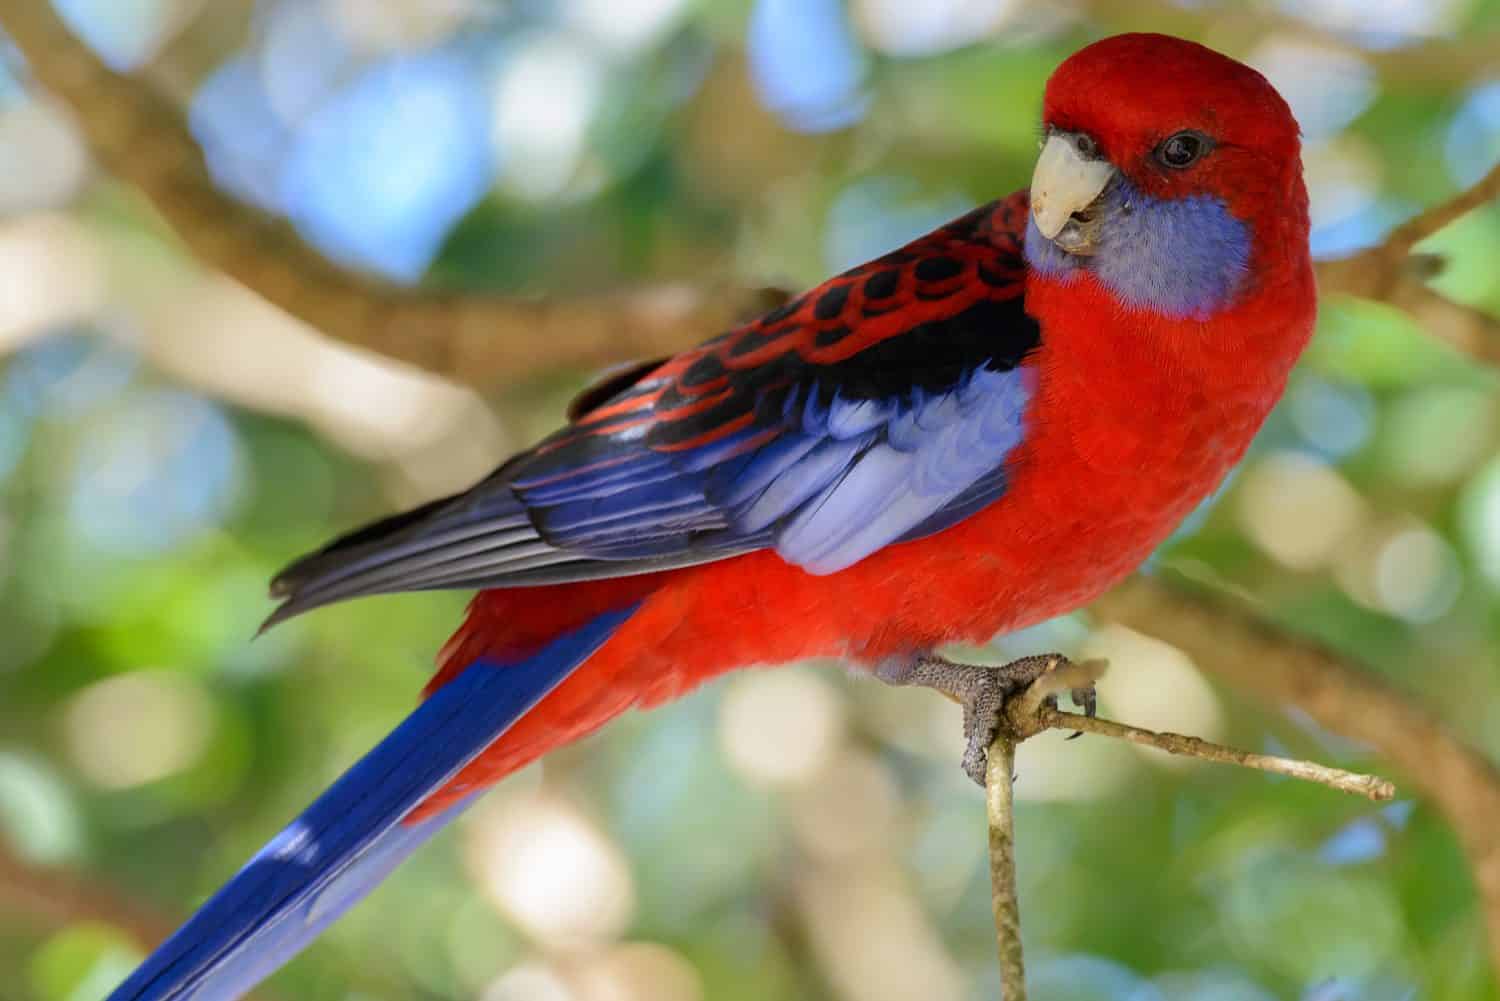 Australian King parrot in a wild